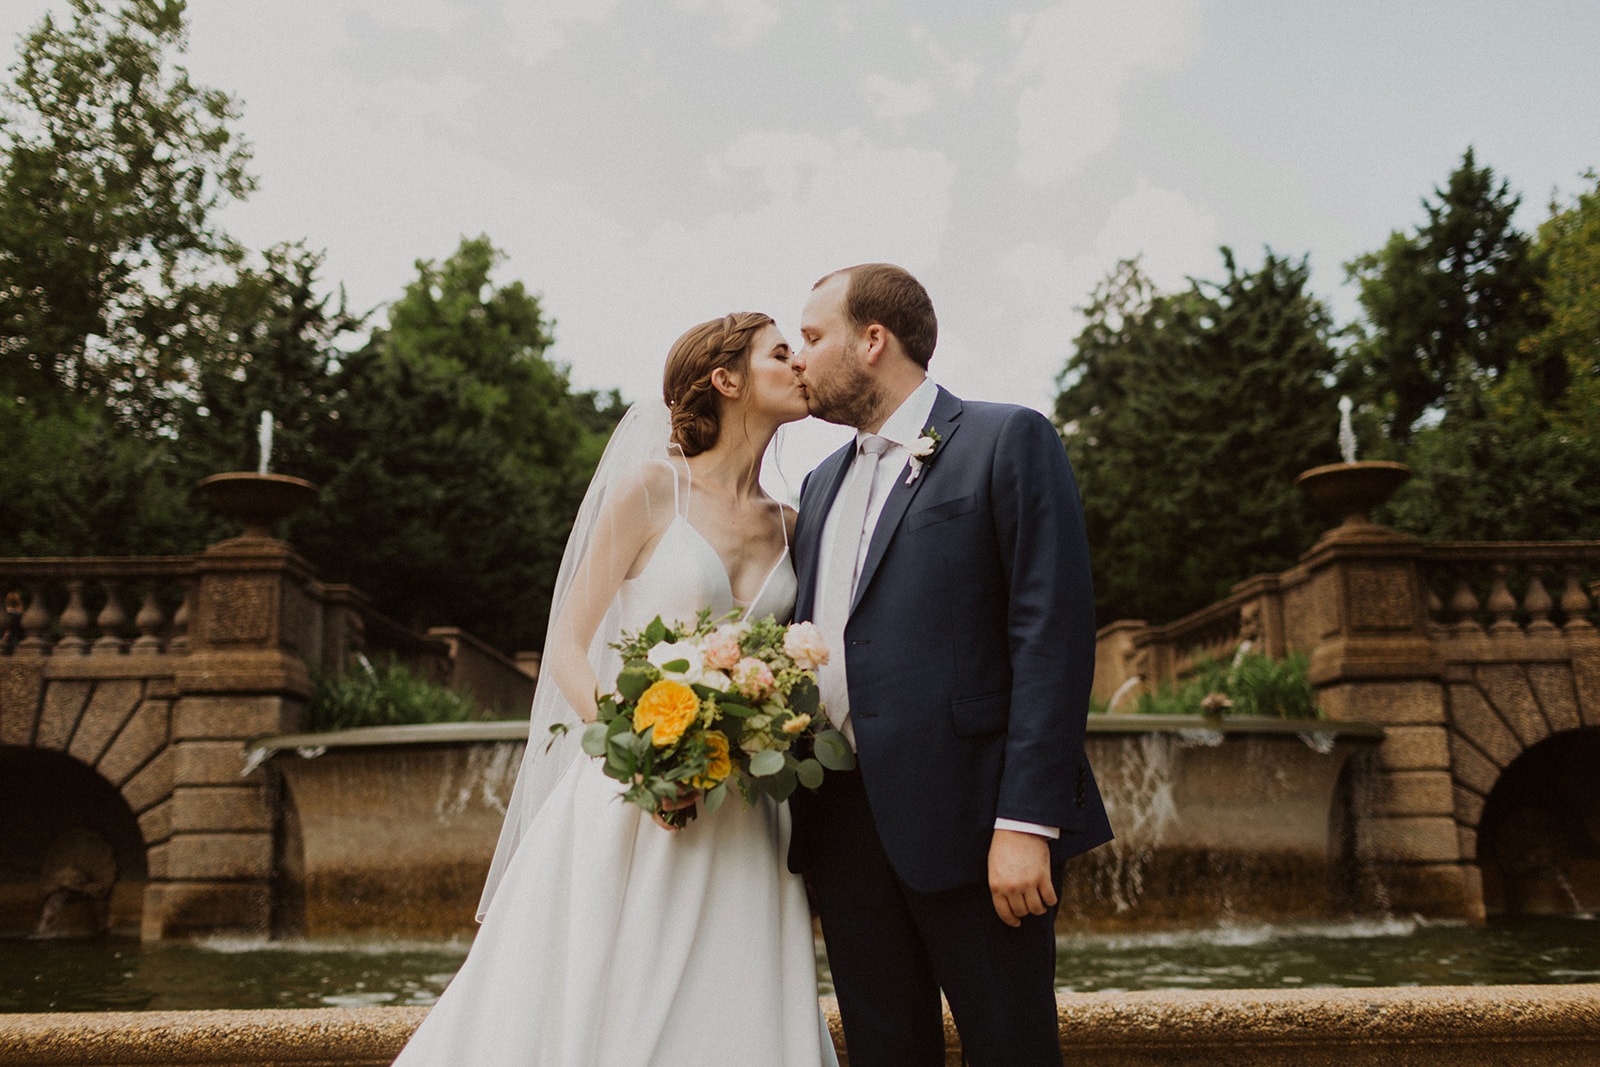 Couple kisses at DC garden wedding venue